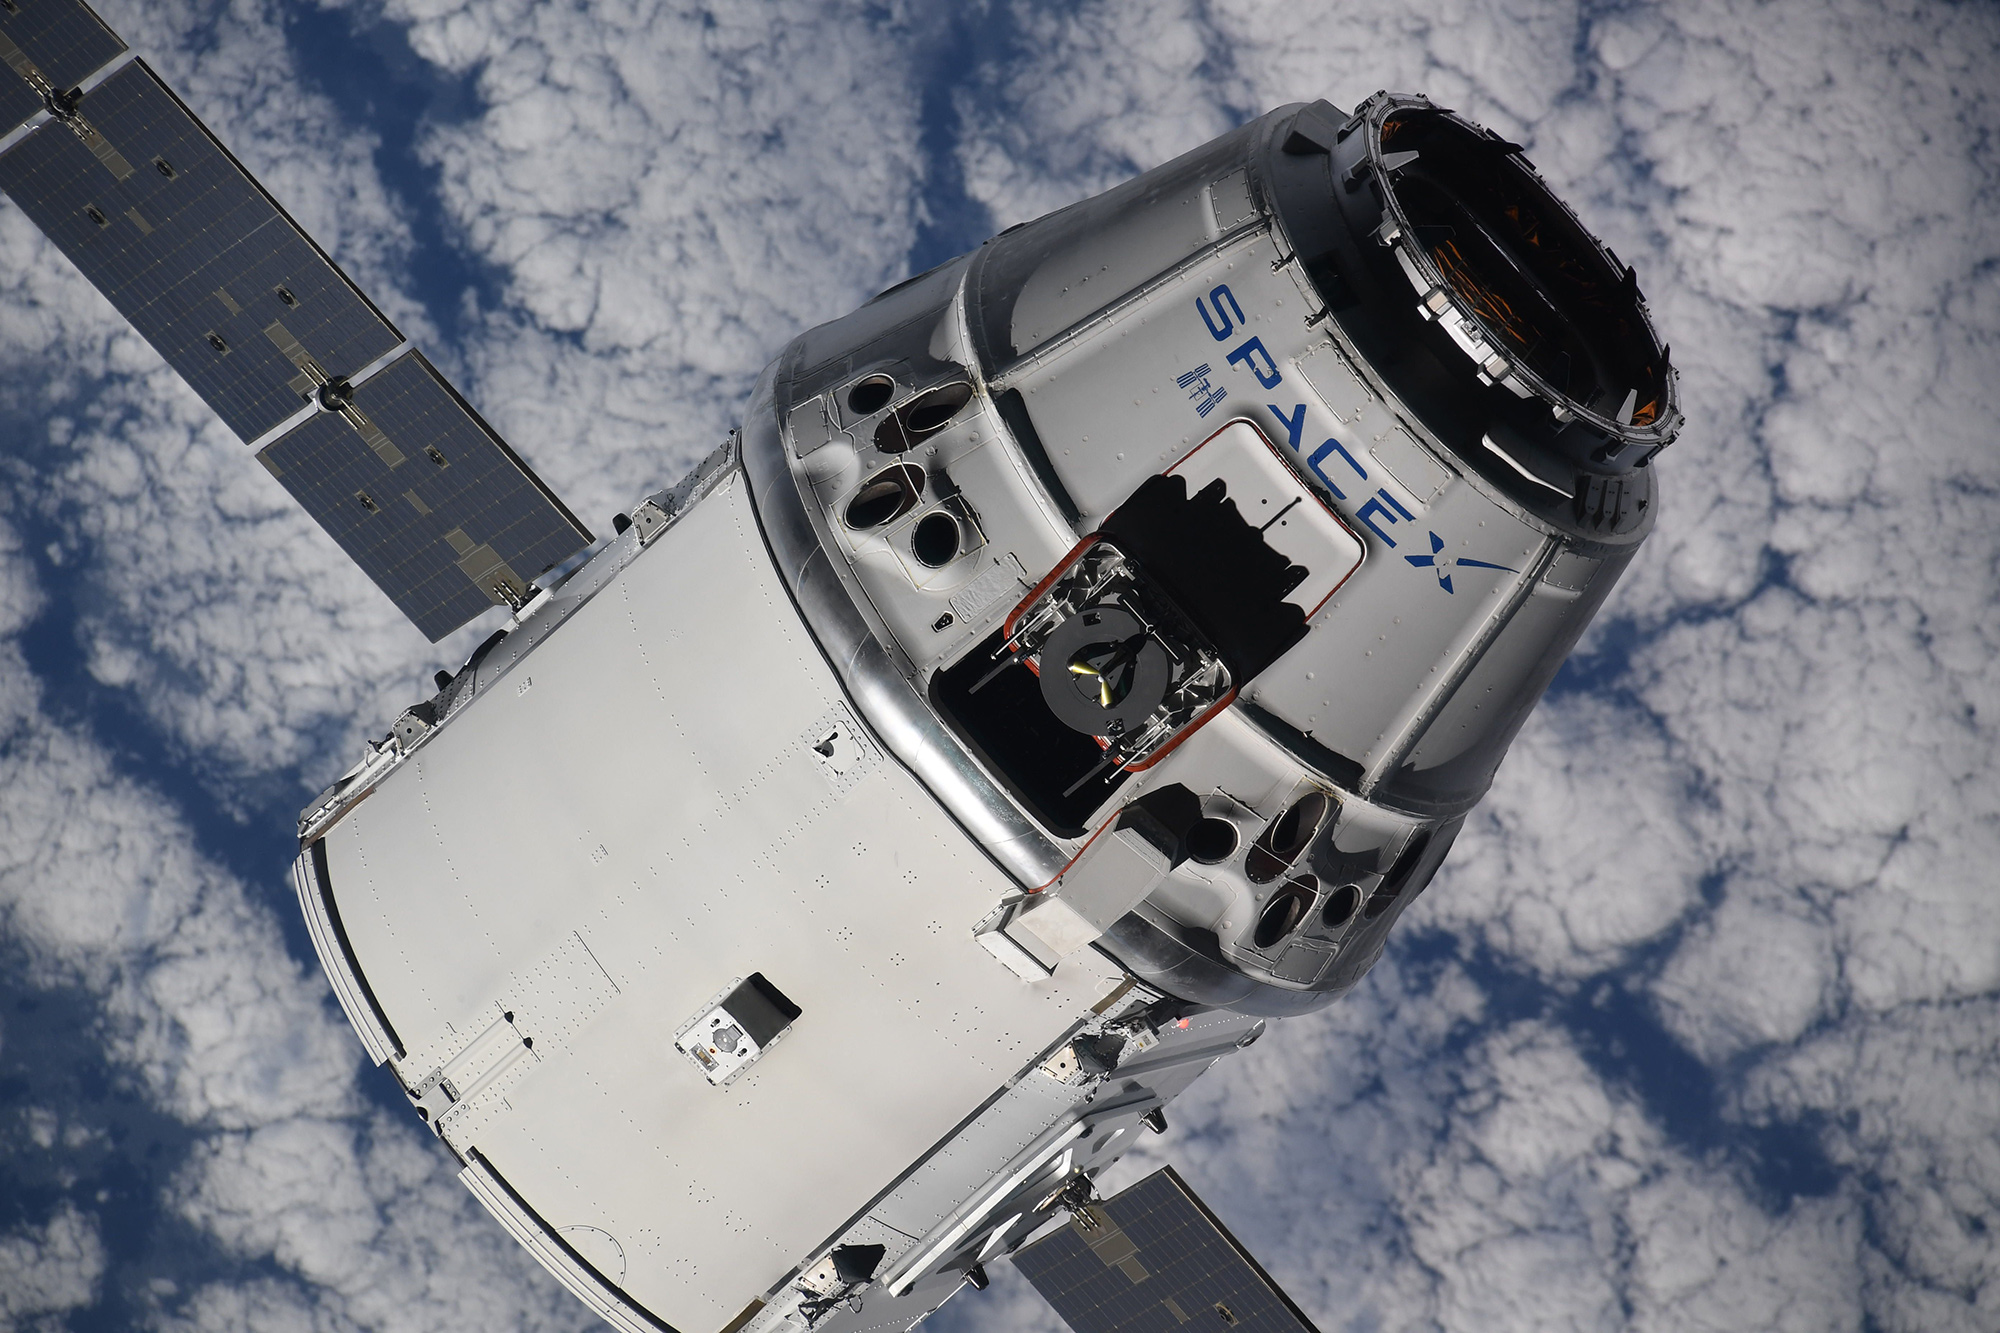 Statek Dragon zbliżający się do Międzynarodowej Stacji Kosmicznej (Fot. Oleg Artiemjew)